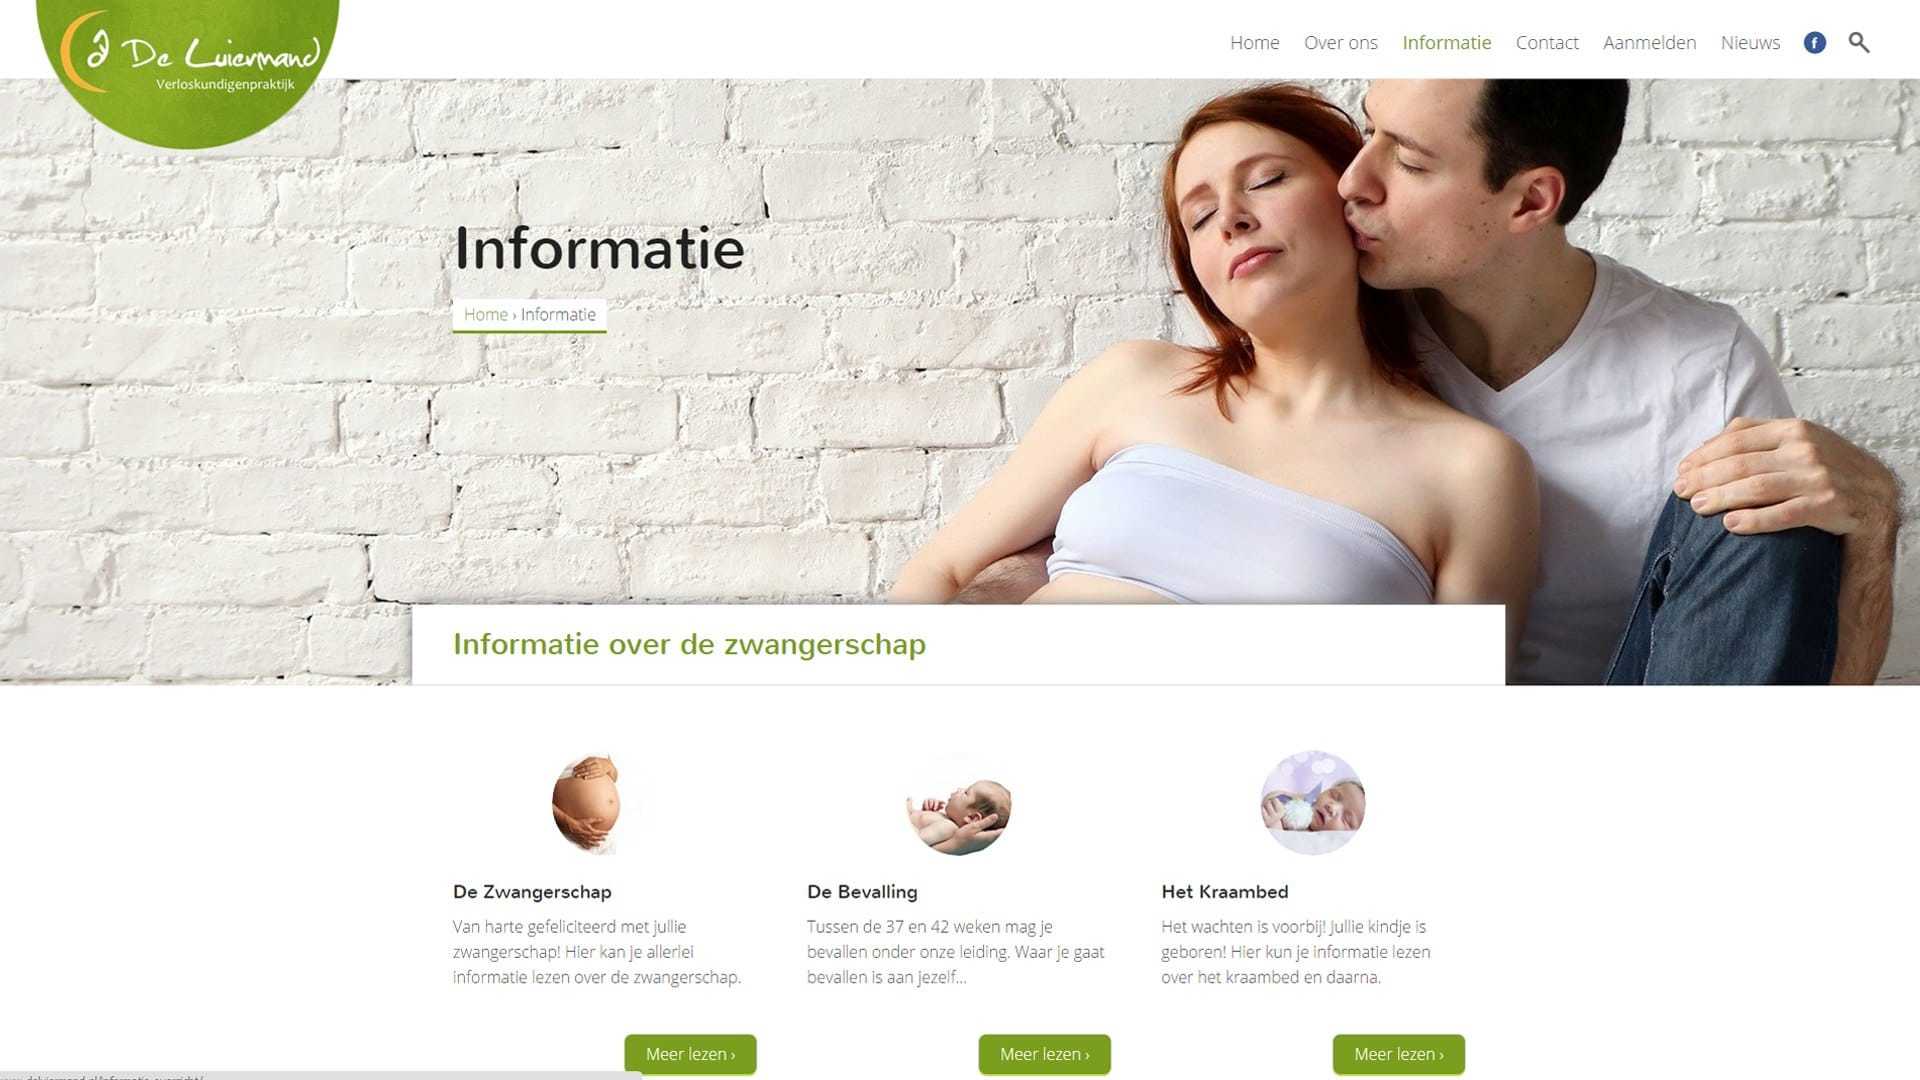 De Luiermand informationpage midwifery practive website by Michiel Tramper